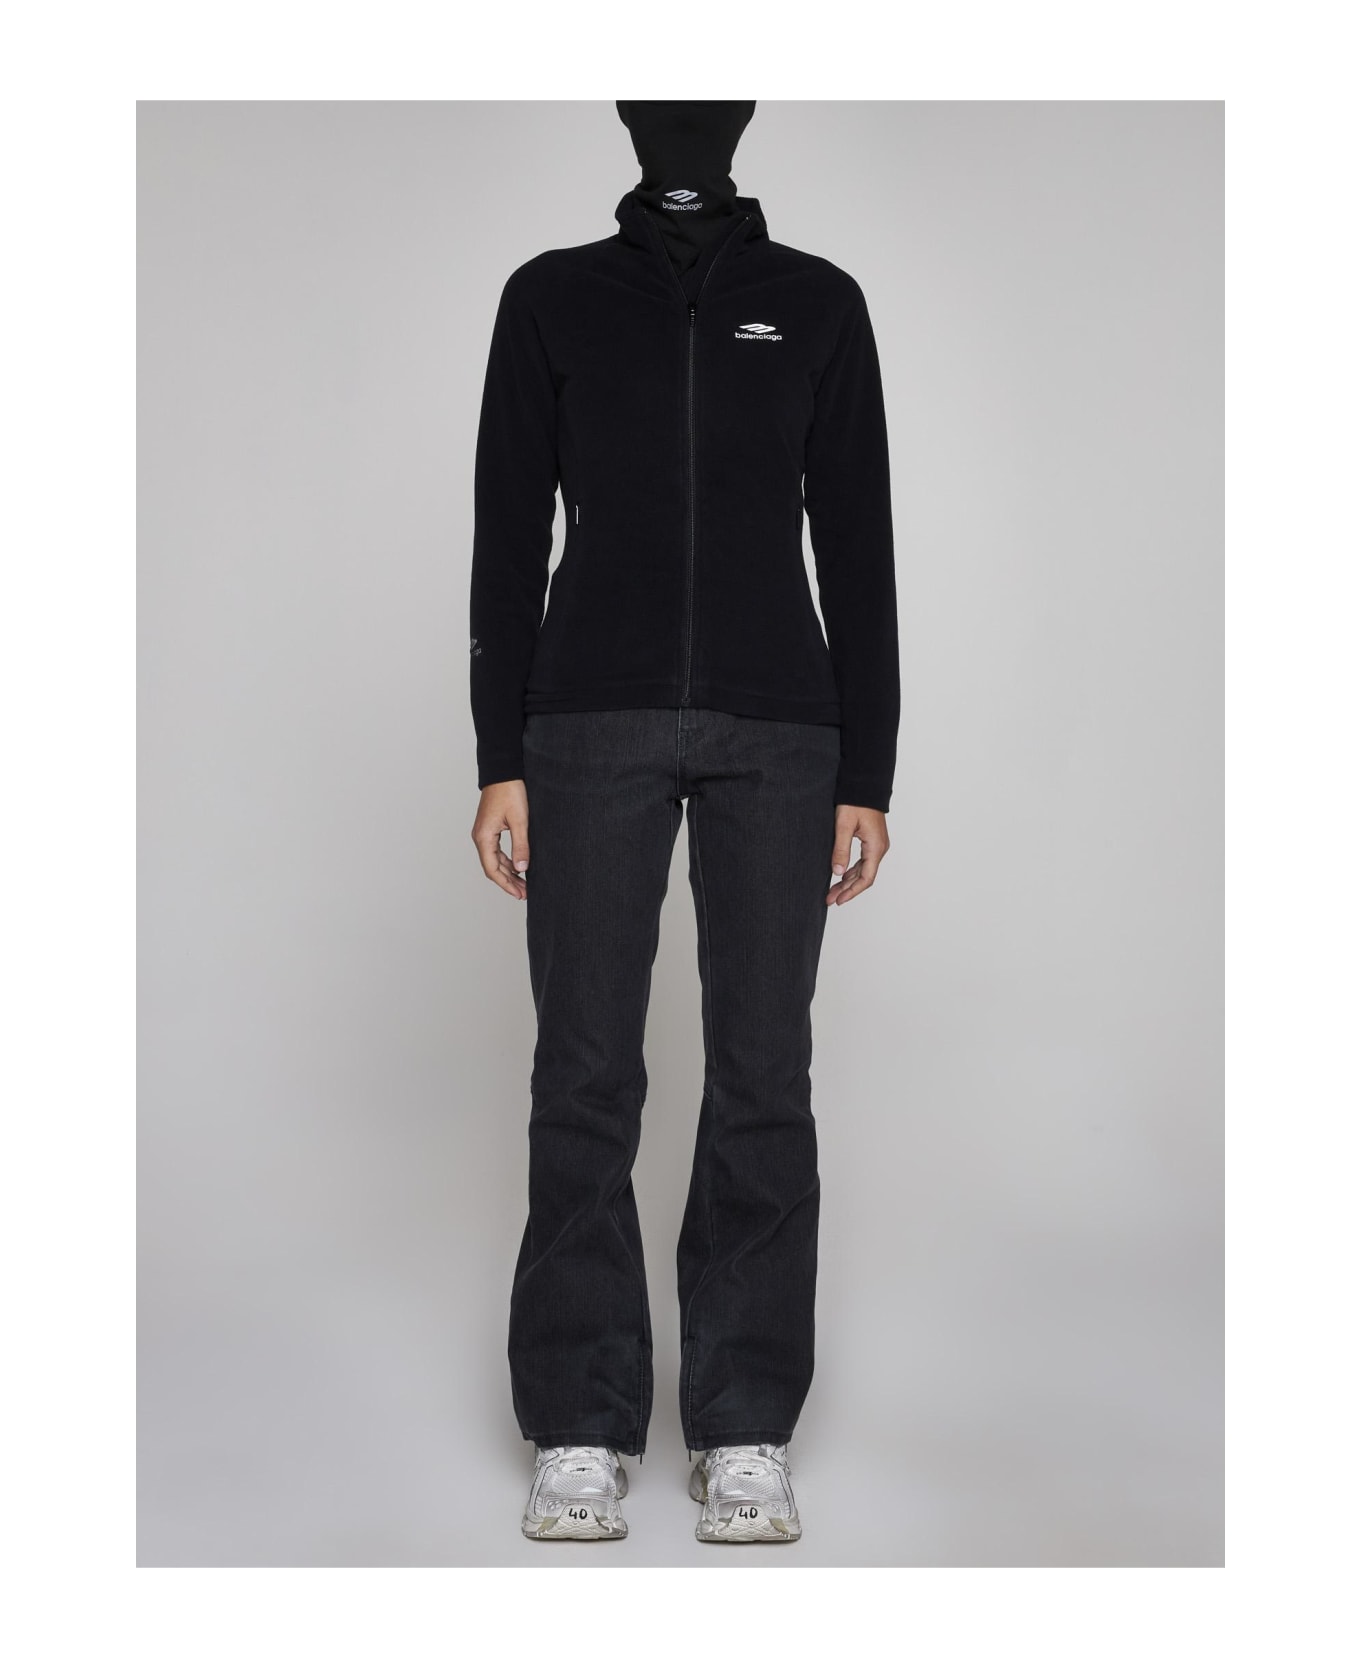 Balenciaga Polar Fleece Zip-up Track Jacket - Black